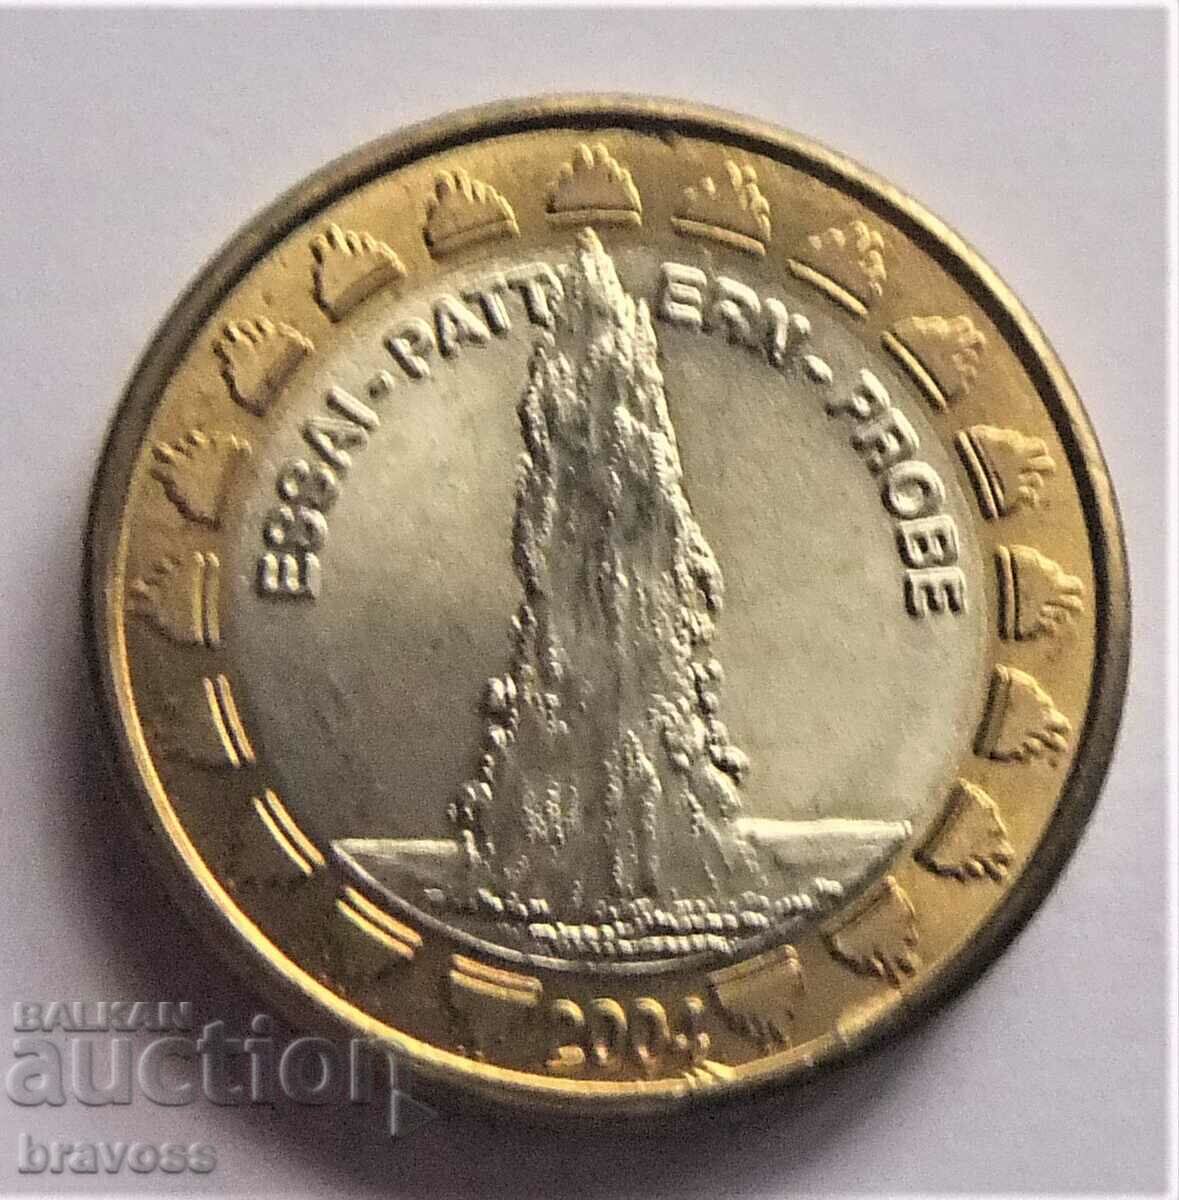 Vatican - 1 euro 2004 - mostra